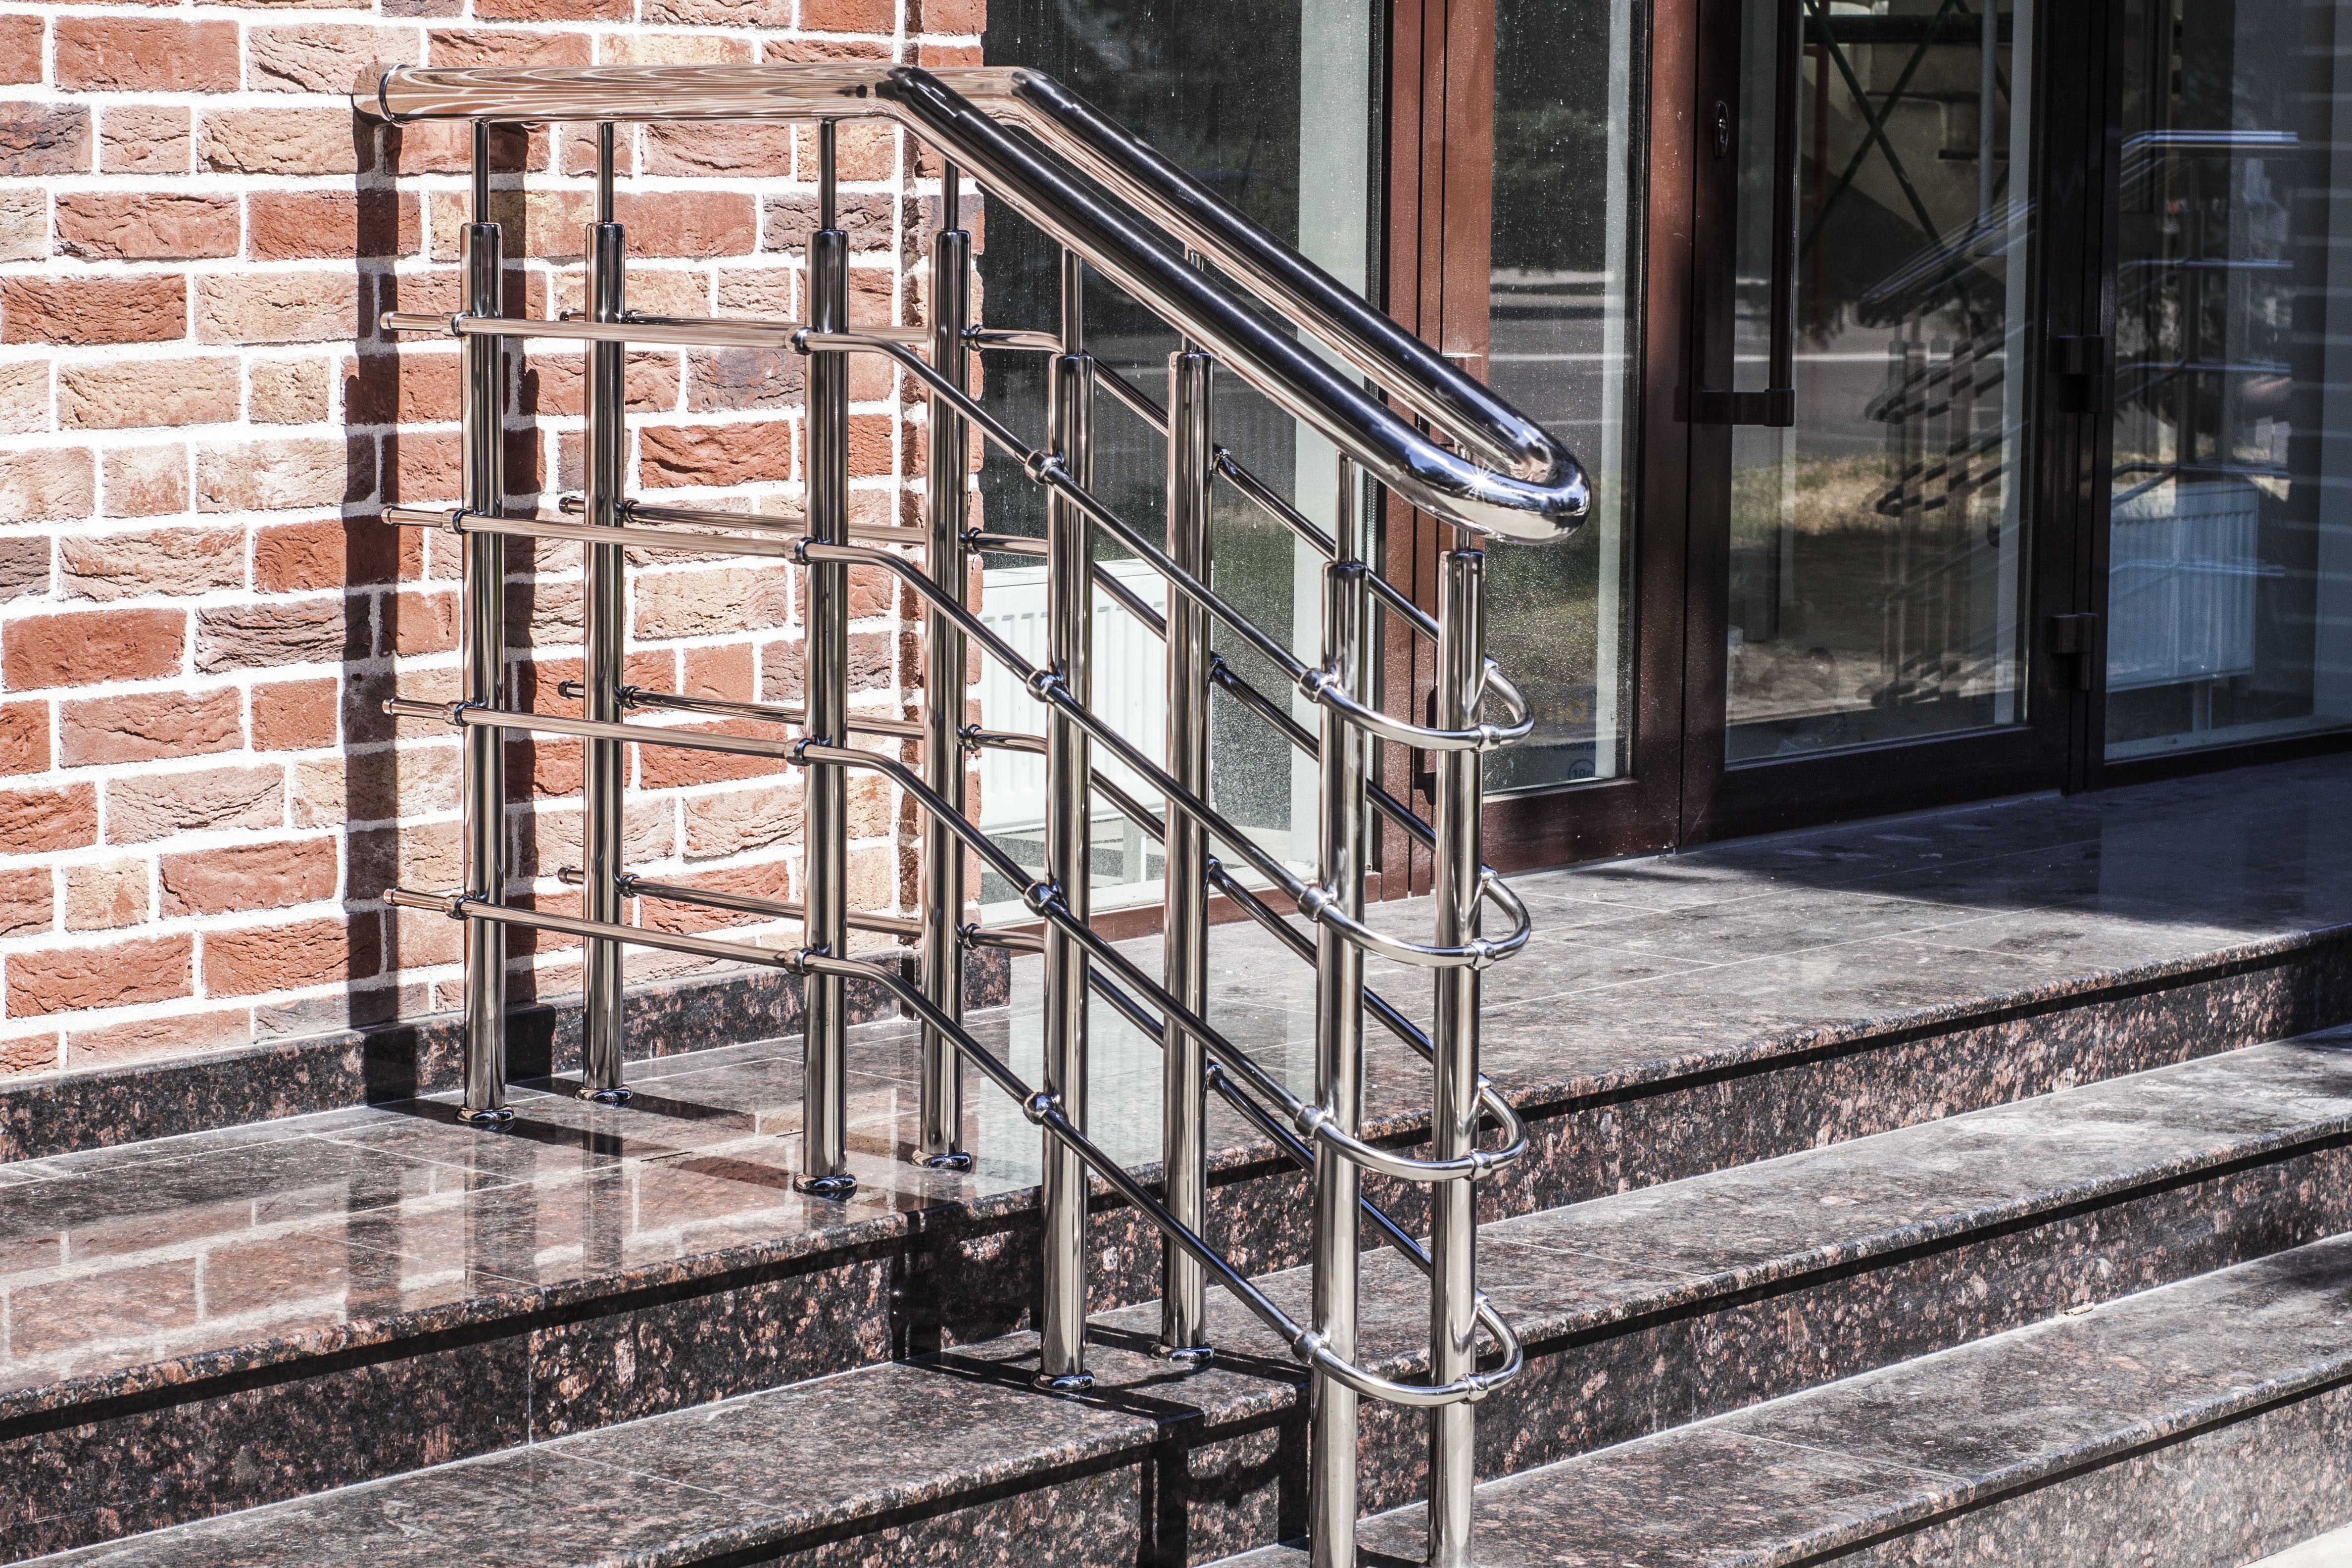 Перила на лестницу из металла (58 фото): металлические лестничные ограждения, сварные варианты из профильной трубы